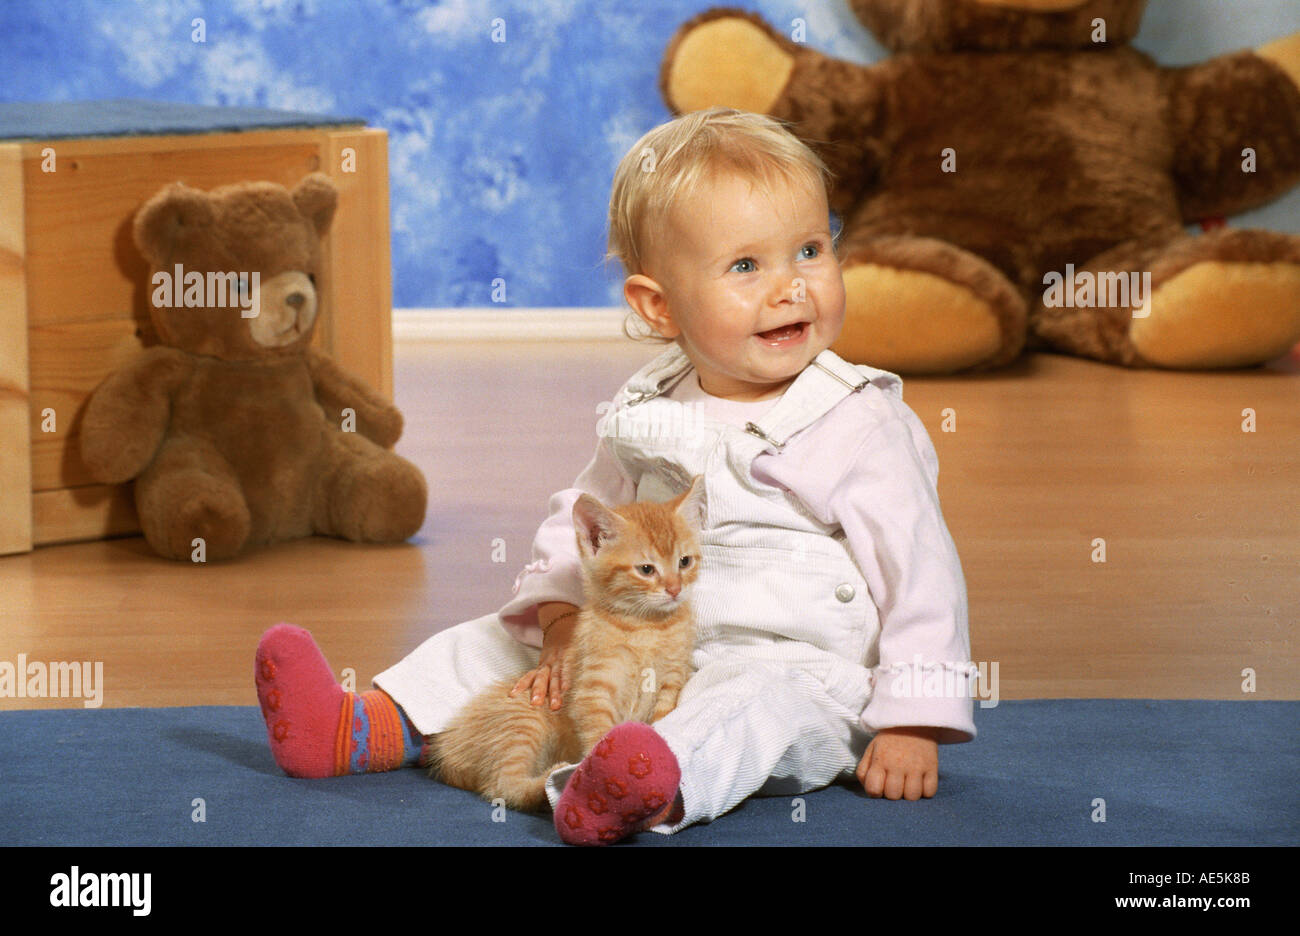 child with kitten Stock Photo